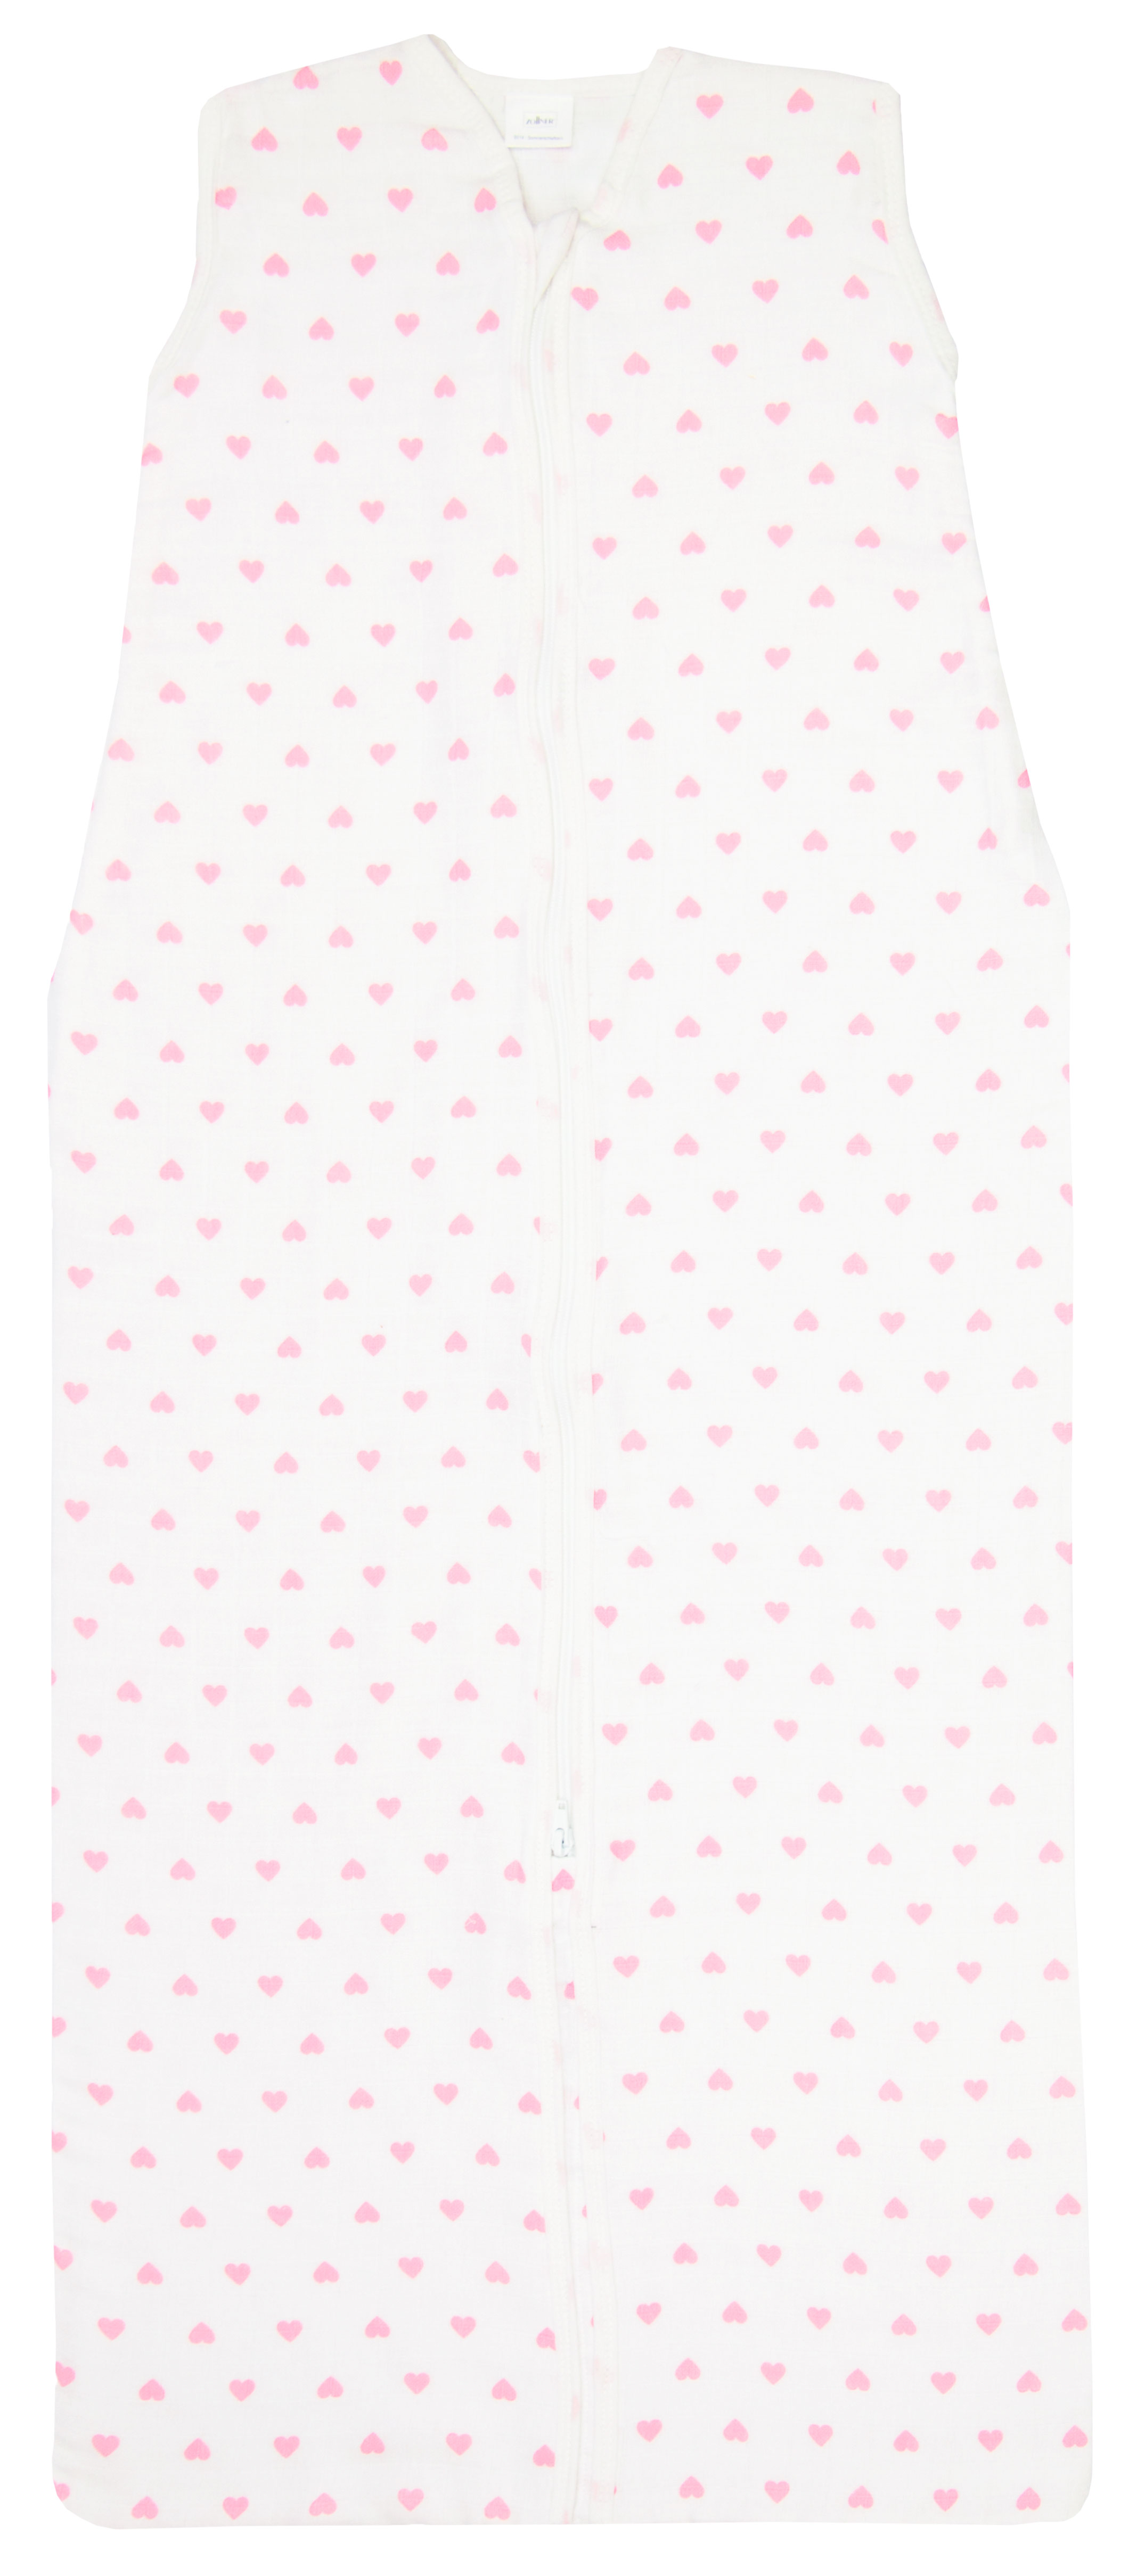 Baby-Sommerschlafsack 110, 100% Baumwolle, weiß-rosa